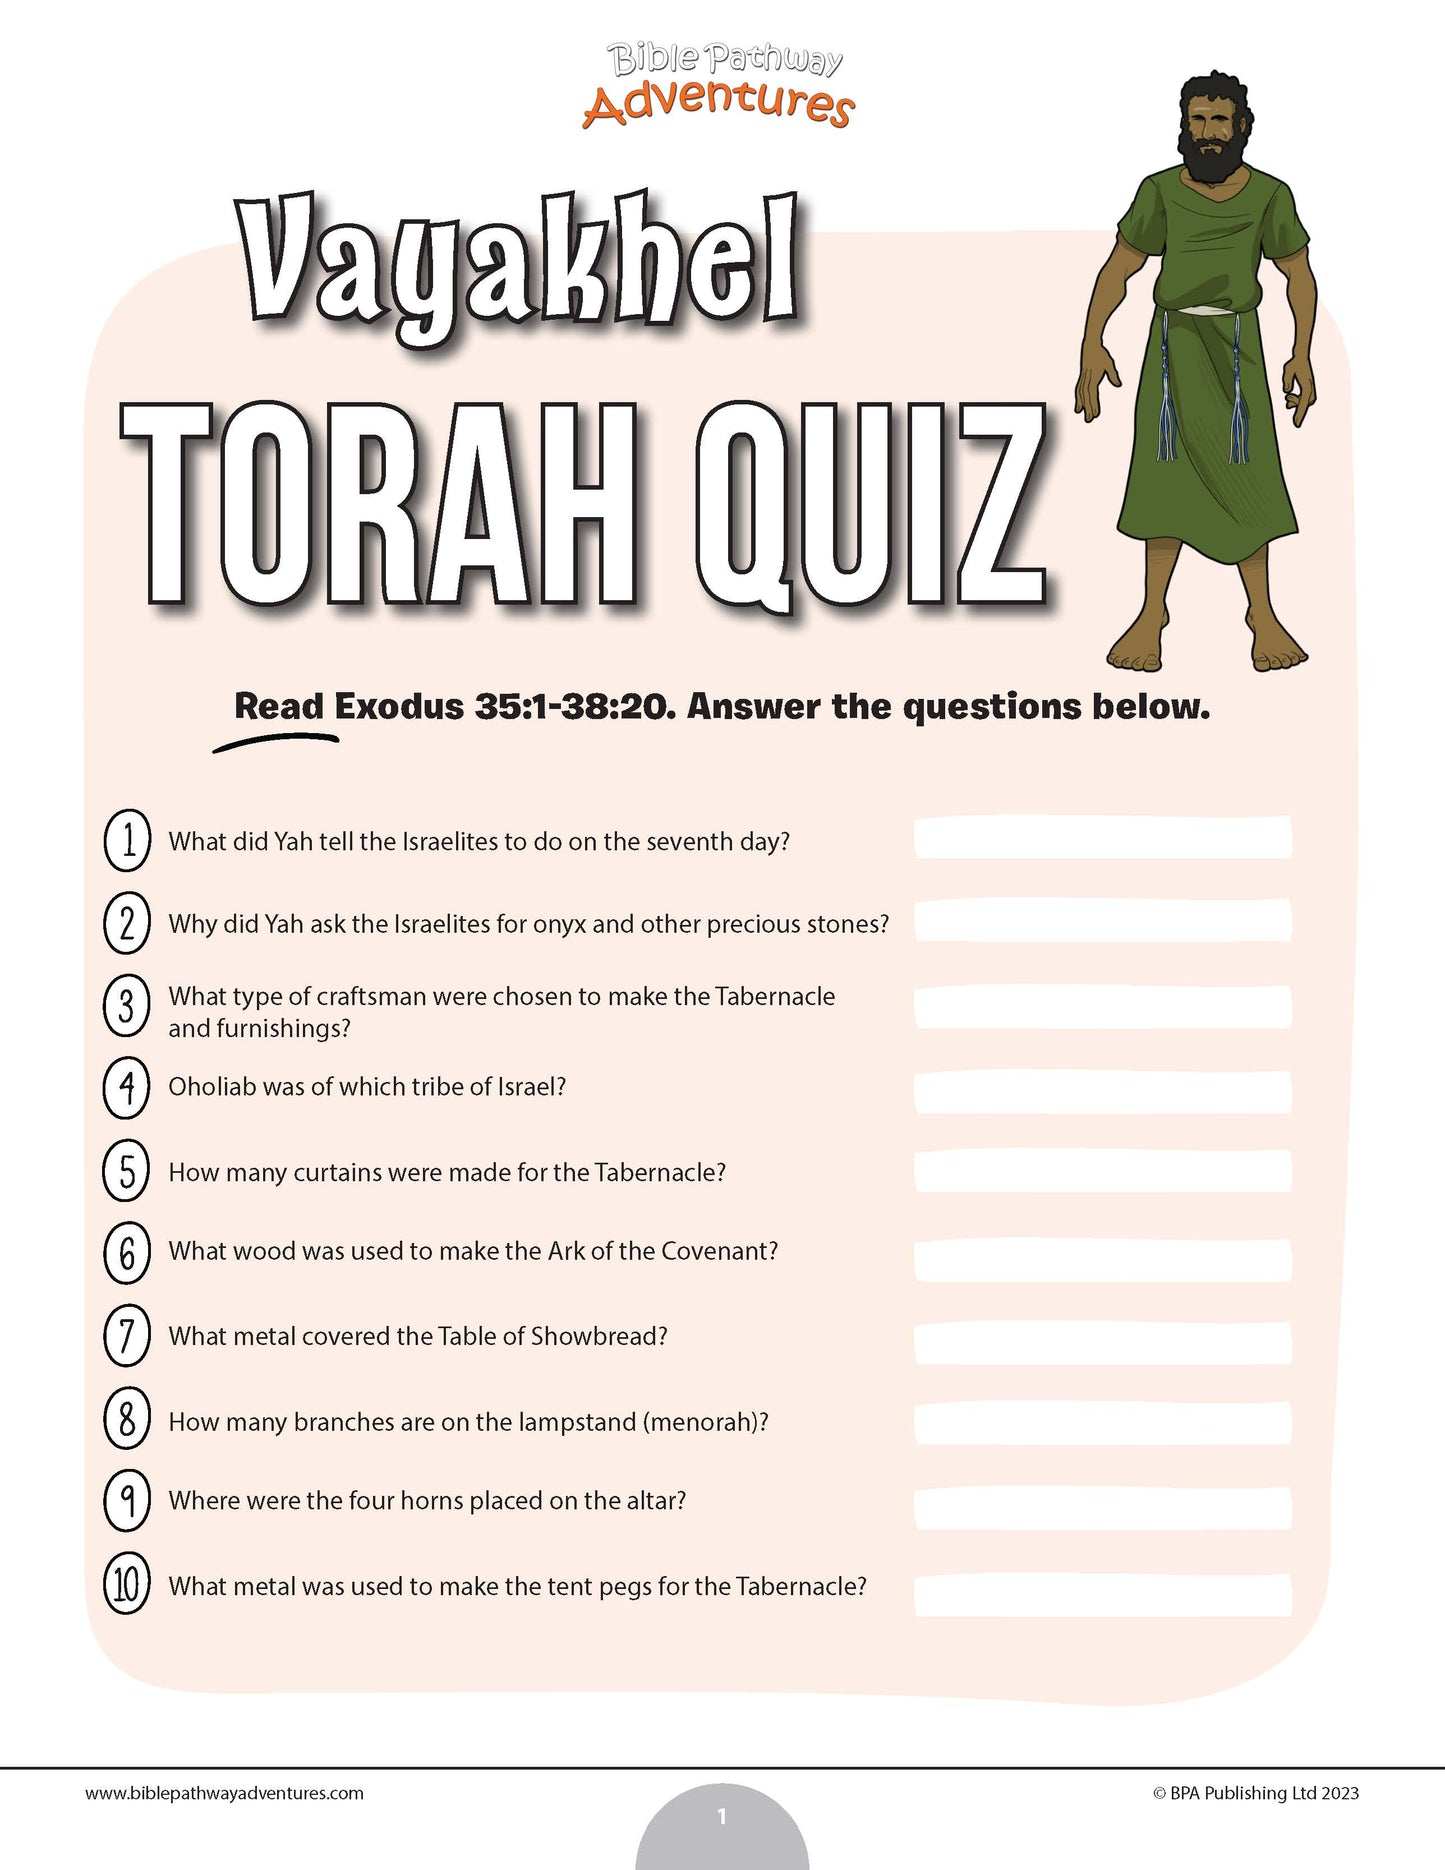 Vayakhel Torah quiz